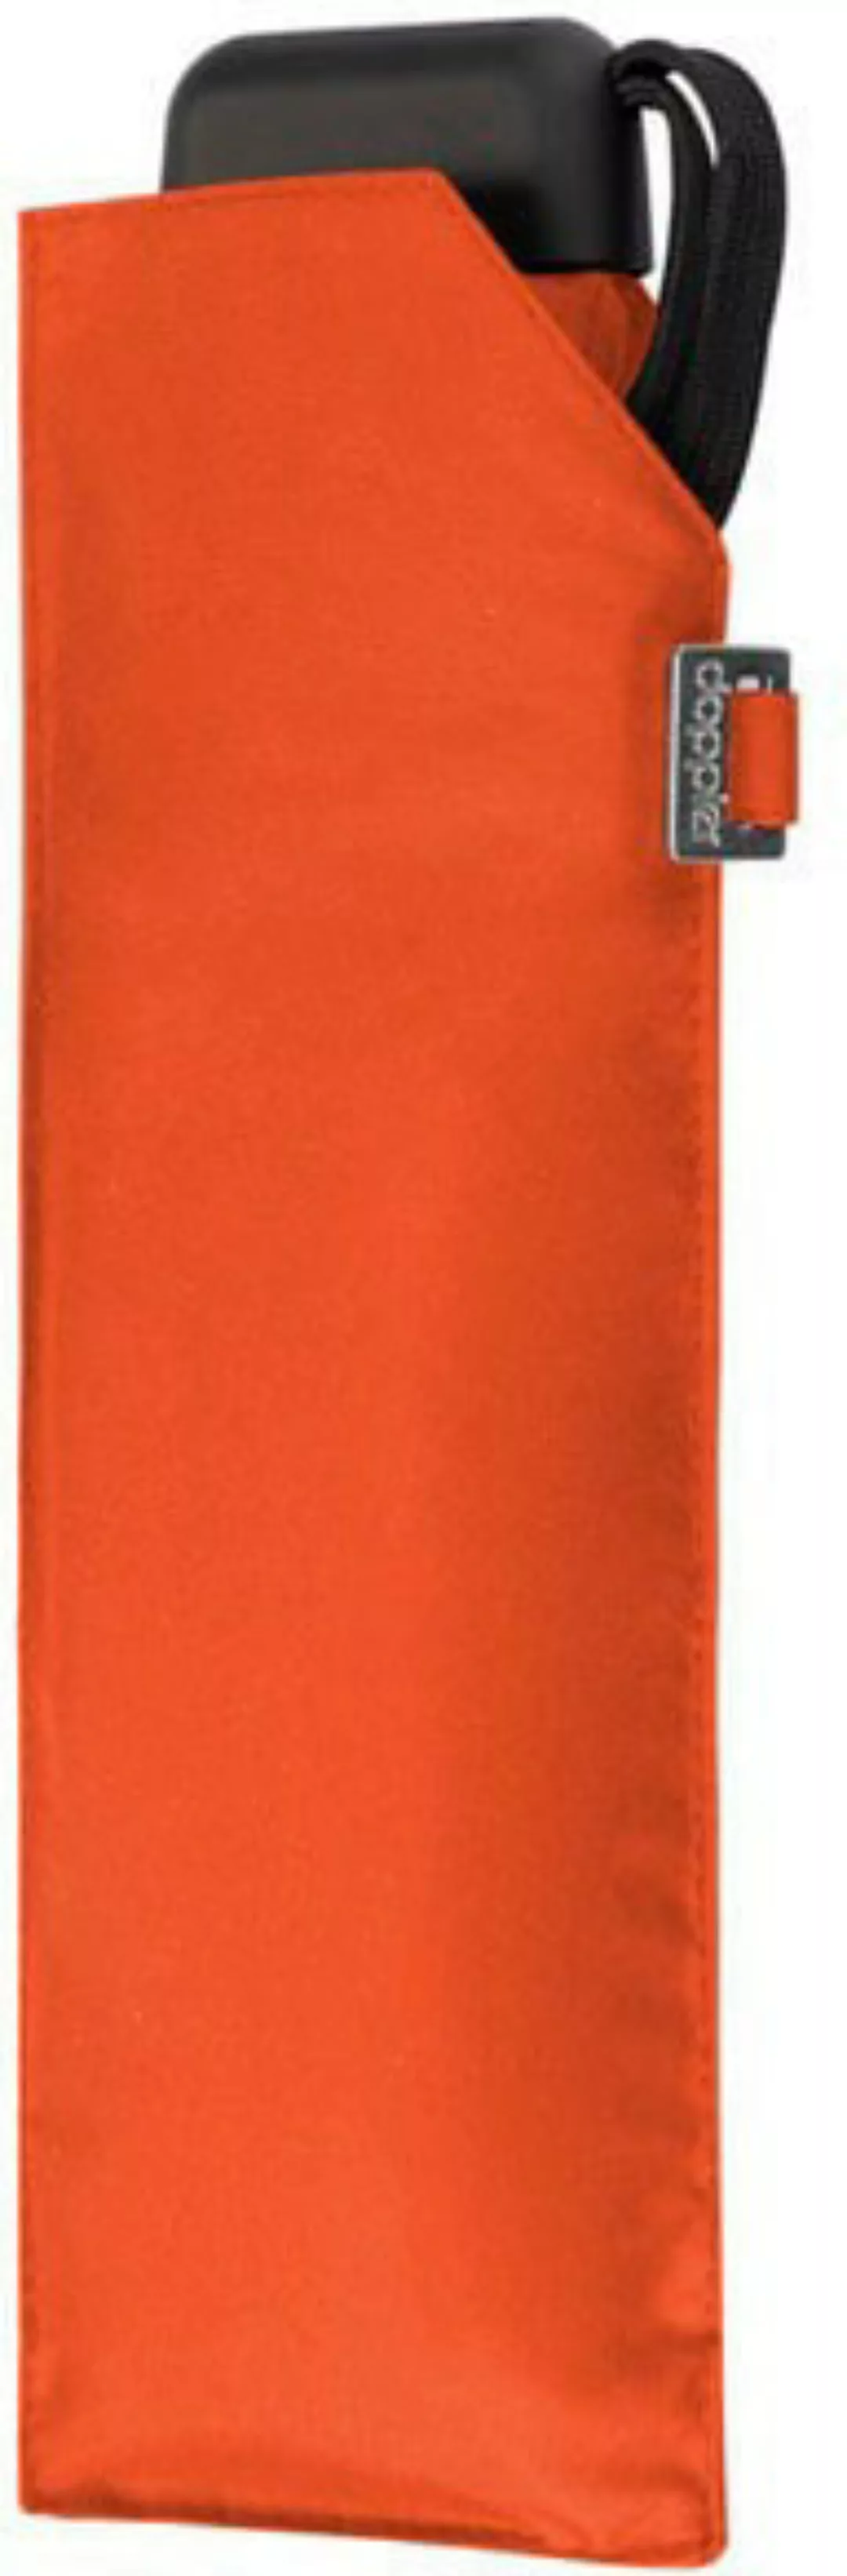 doppler Taschenregenschirm "Carbonsteel Slim uni, vibrant orange" günstig online kaufen